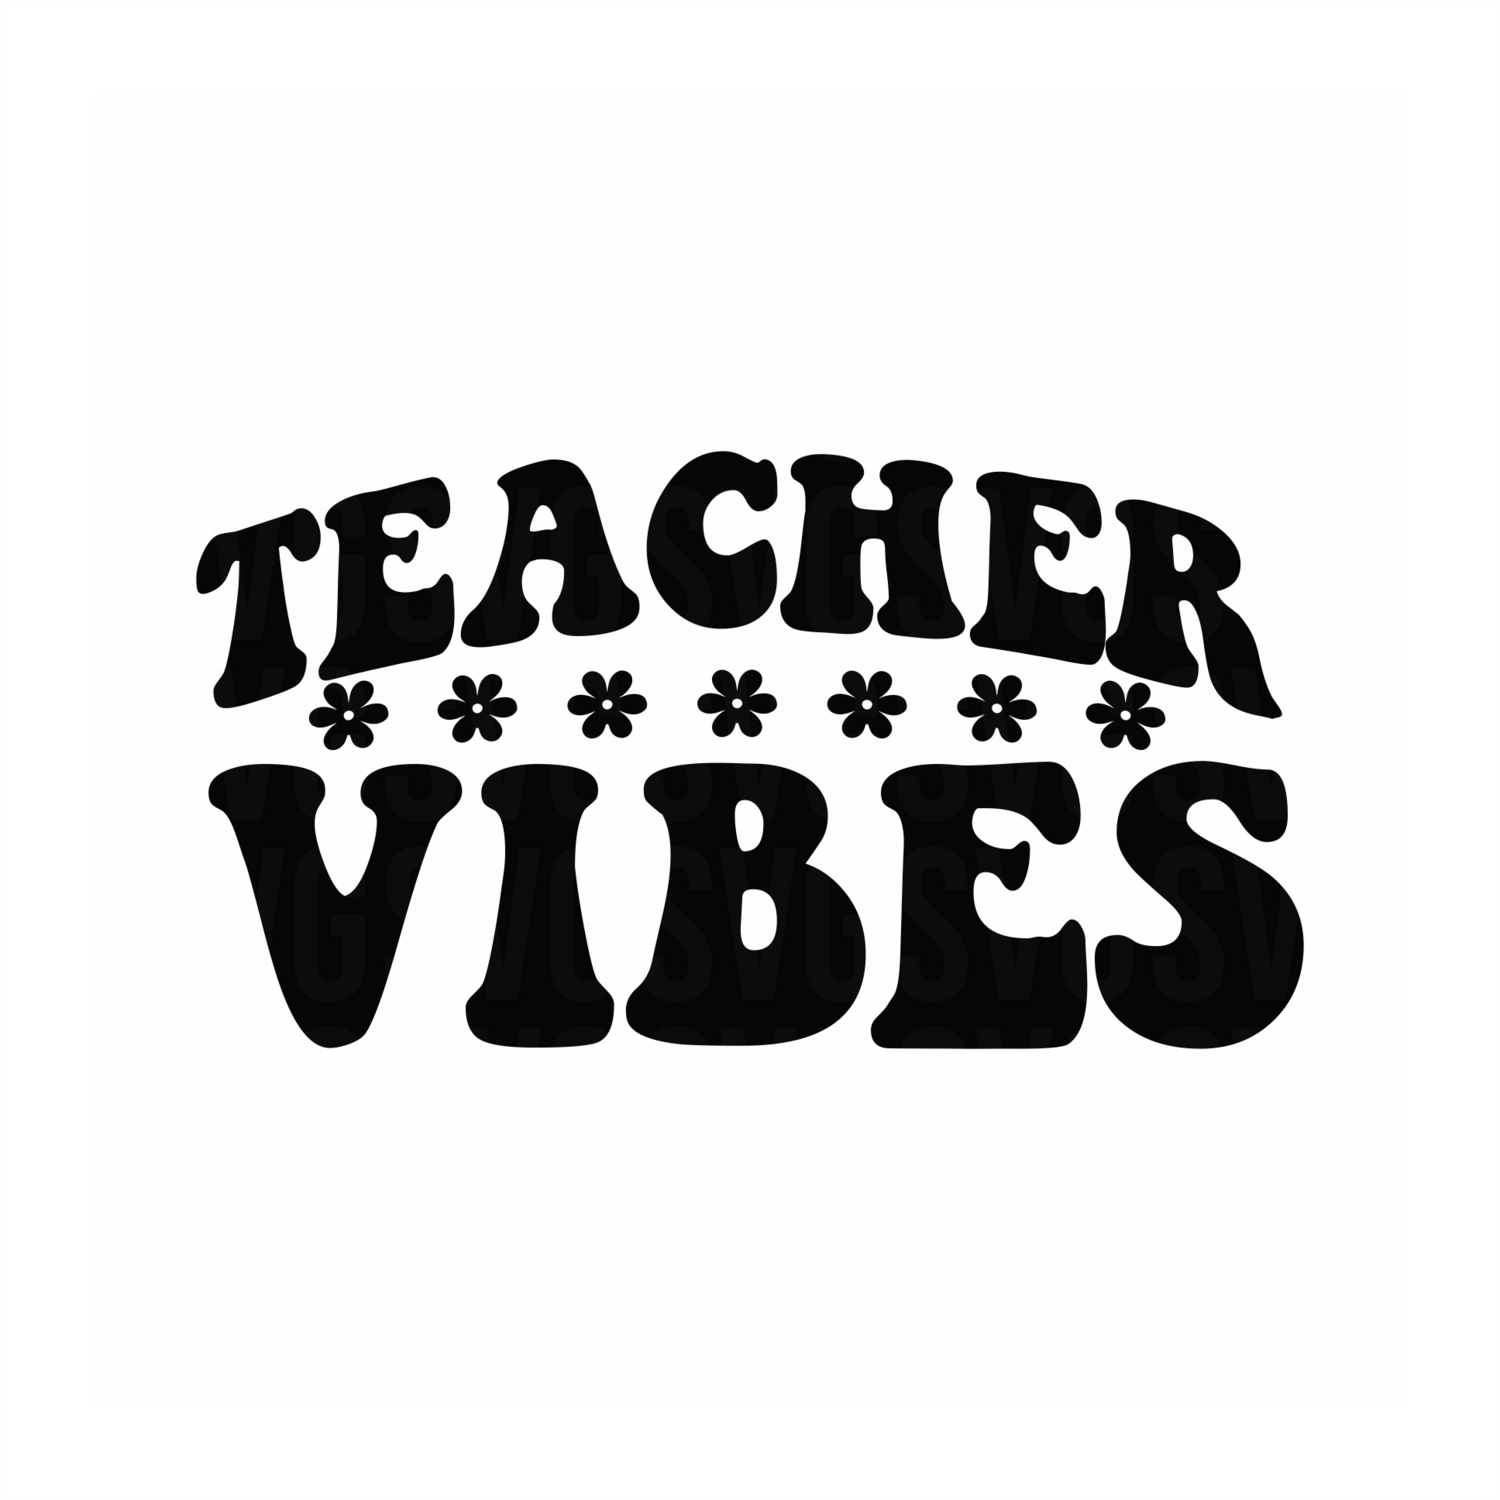 Teacher Vibes SVG